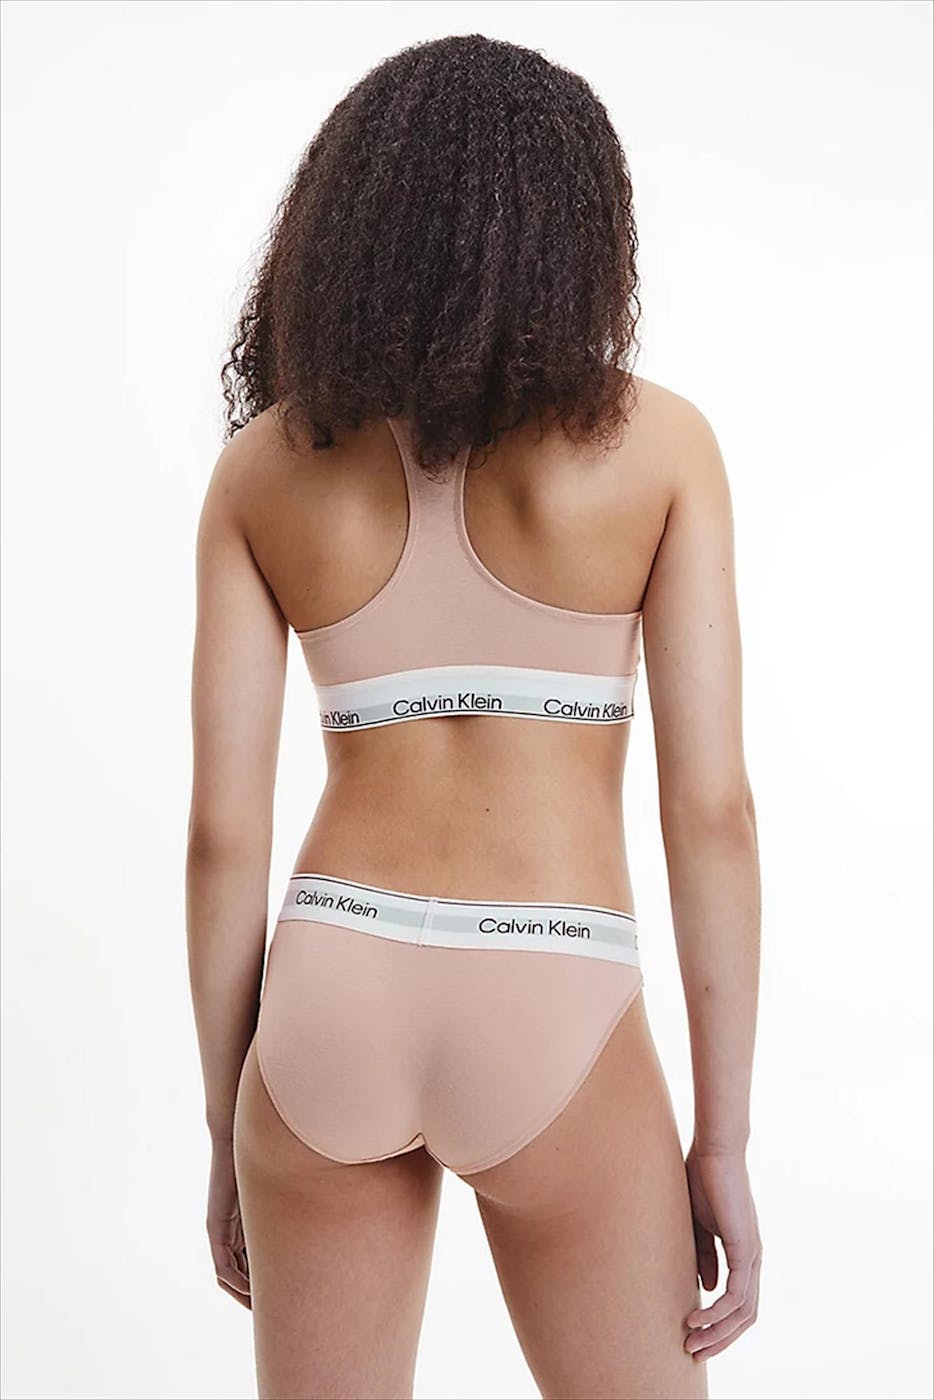 Calvin Klein Underwear - Roze Signature slip